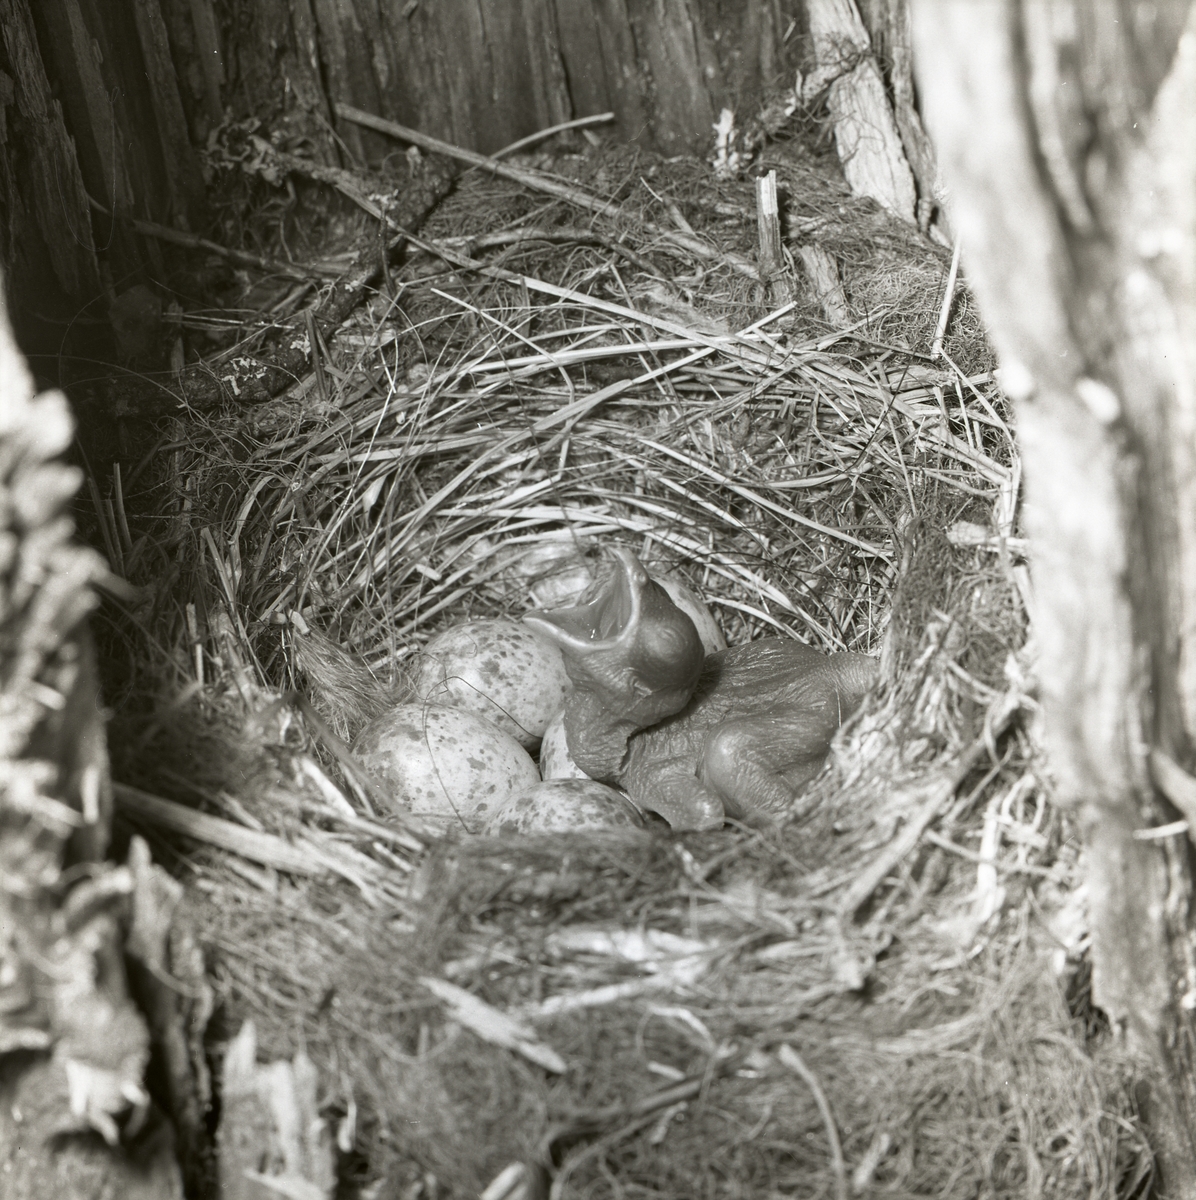 Den nakna gökungen är nykläckt vid fototillfället 25 juni 1961. Den ligger i fågelboet intill de övriga äggen och ropar efter mat. Ögonen har ännu inte öppnat sig, kroppen har inte fått några fjädrar och näbben är vidöppen.